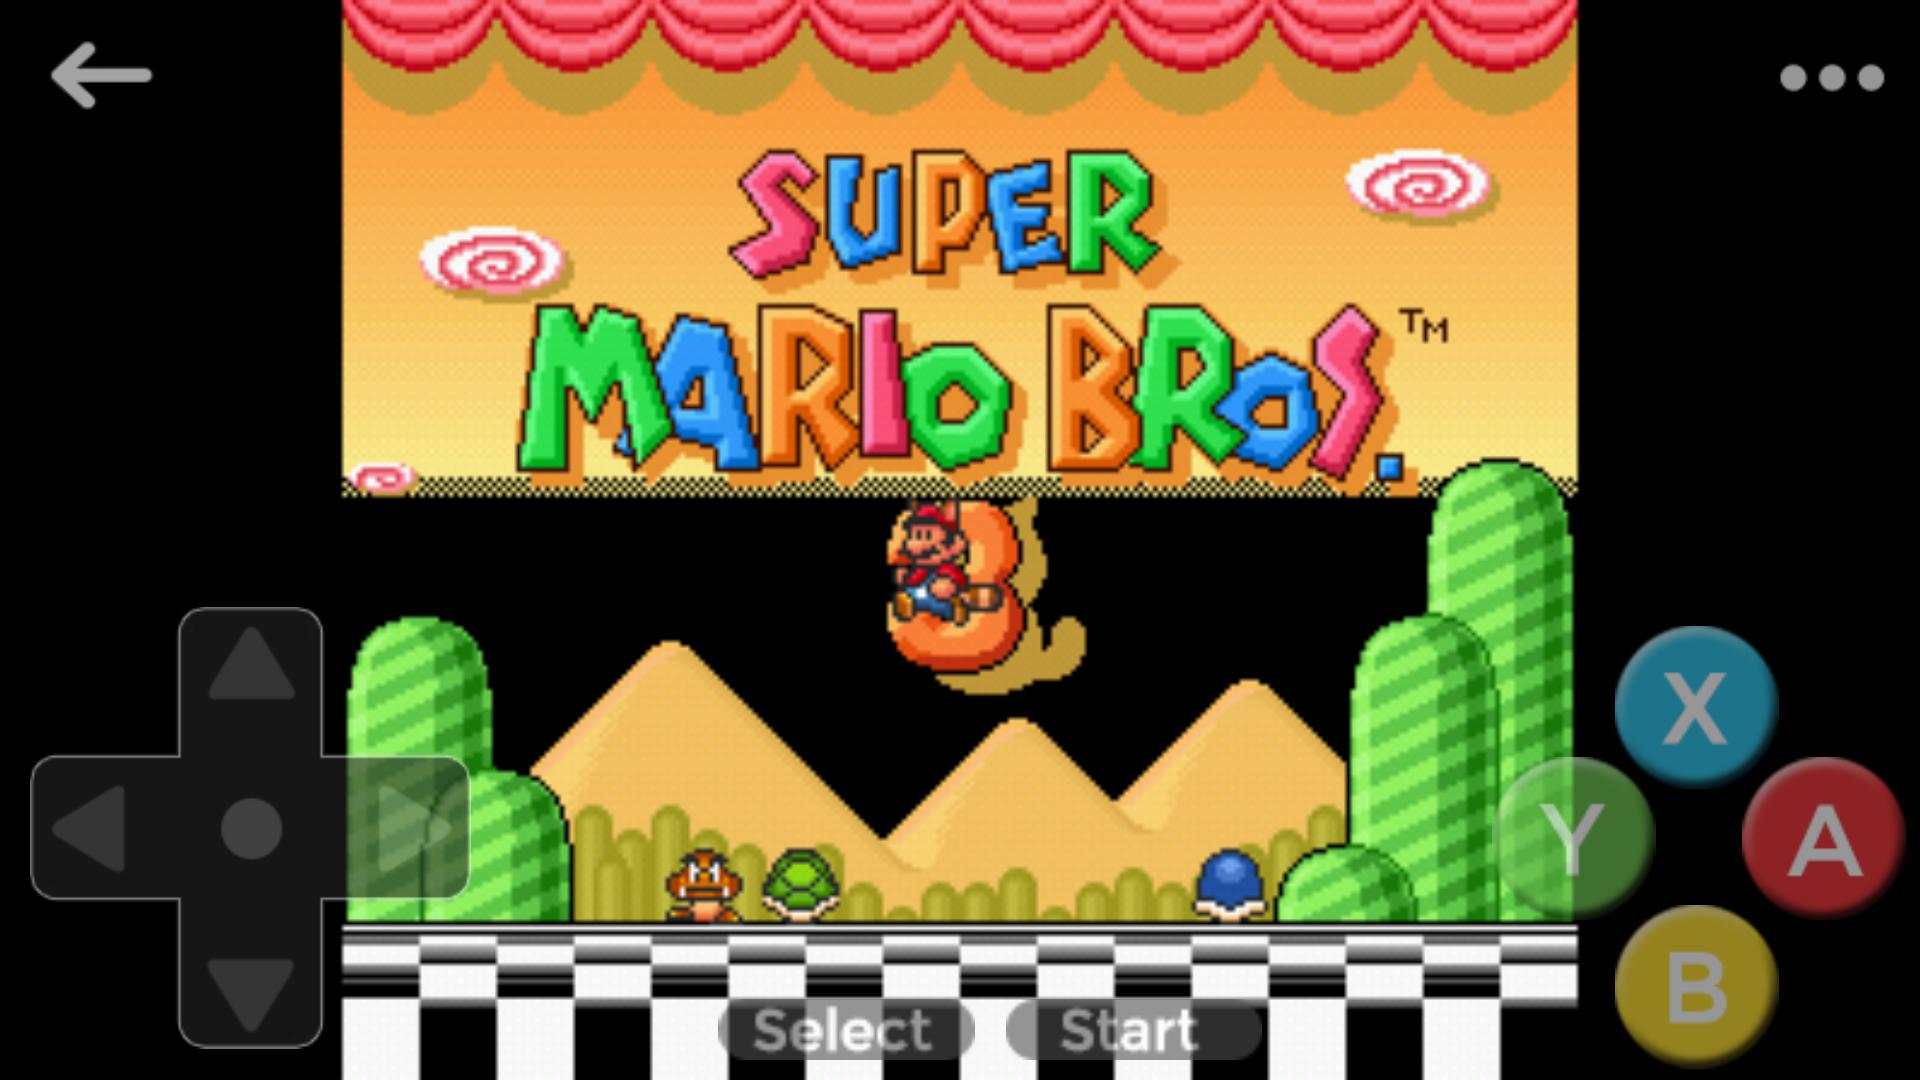 Mario bros snes. Super Mario all Stars Snes. Super Mario all-Stars + super Mario World Snes. Super Mario all-Stars super Mario Bros 3.